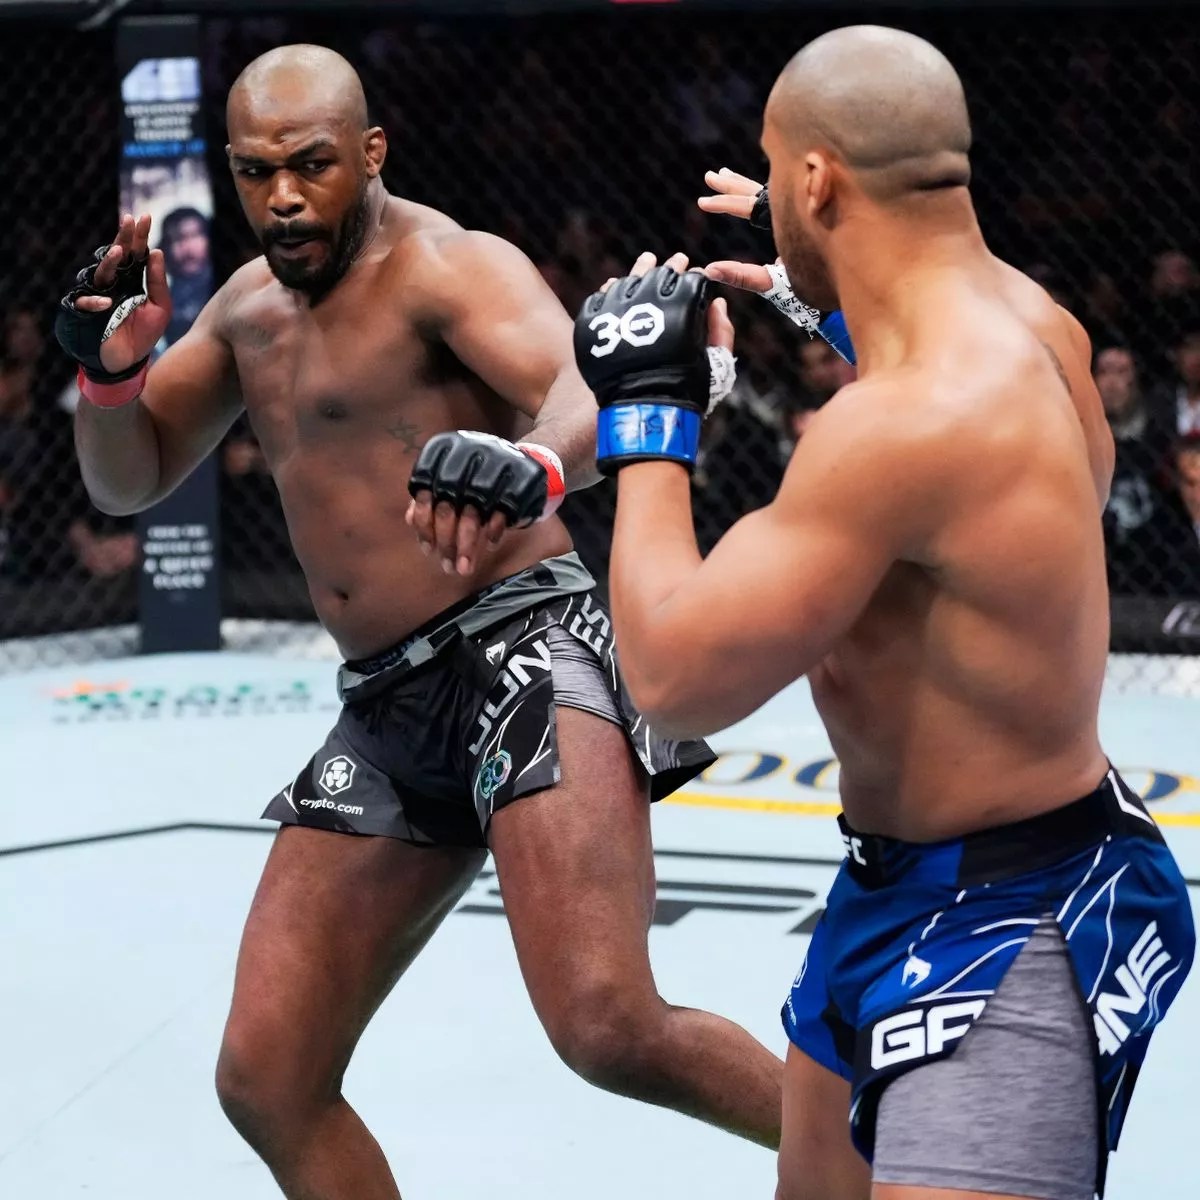 MMA Hayranları, Jon Jones'u UFC'deki Ağır Siklet Üstünlüğünü Gösterdiği İçin Alay Ediyor - "Francis Gane First'e Hakim Oldu"